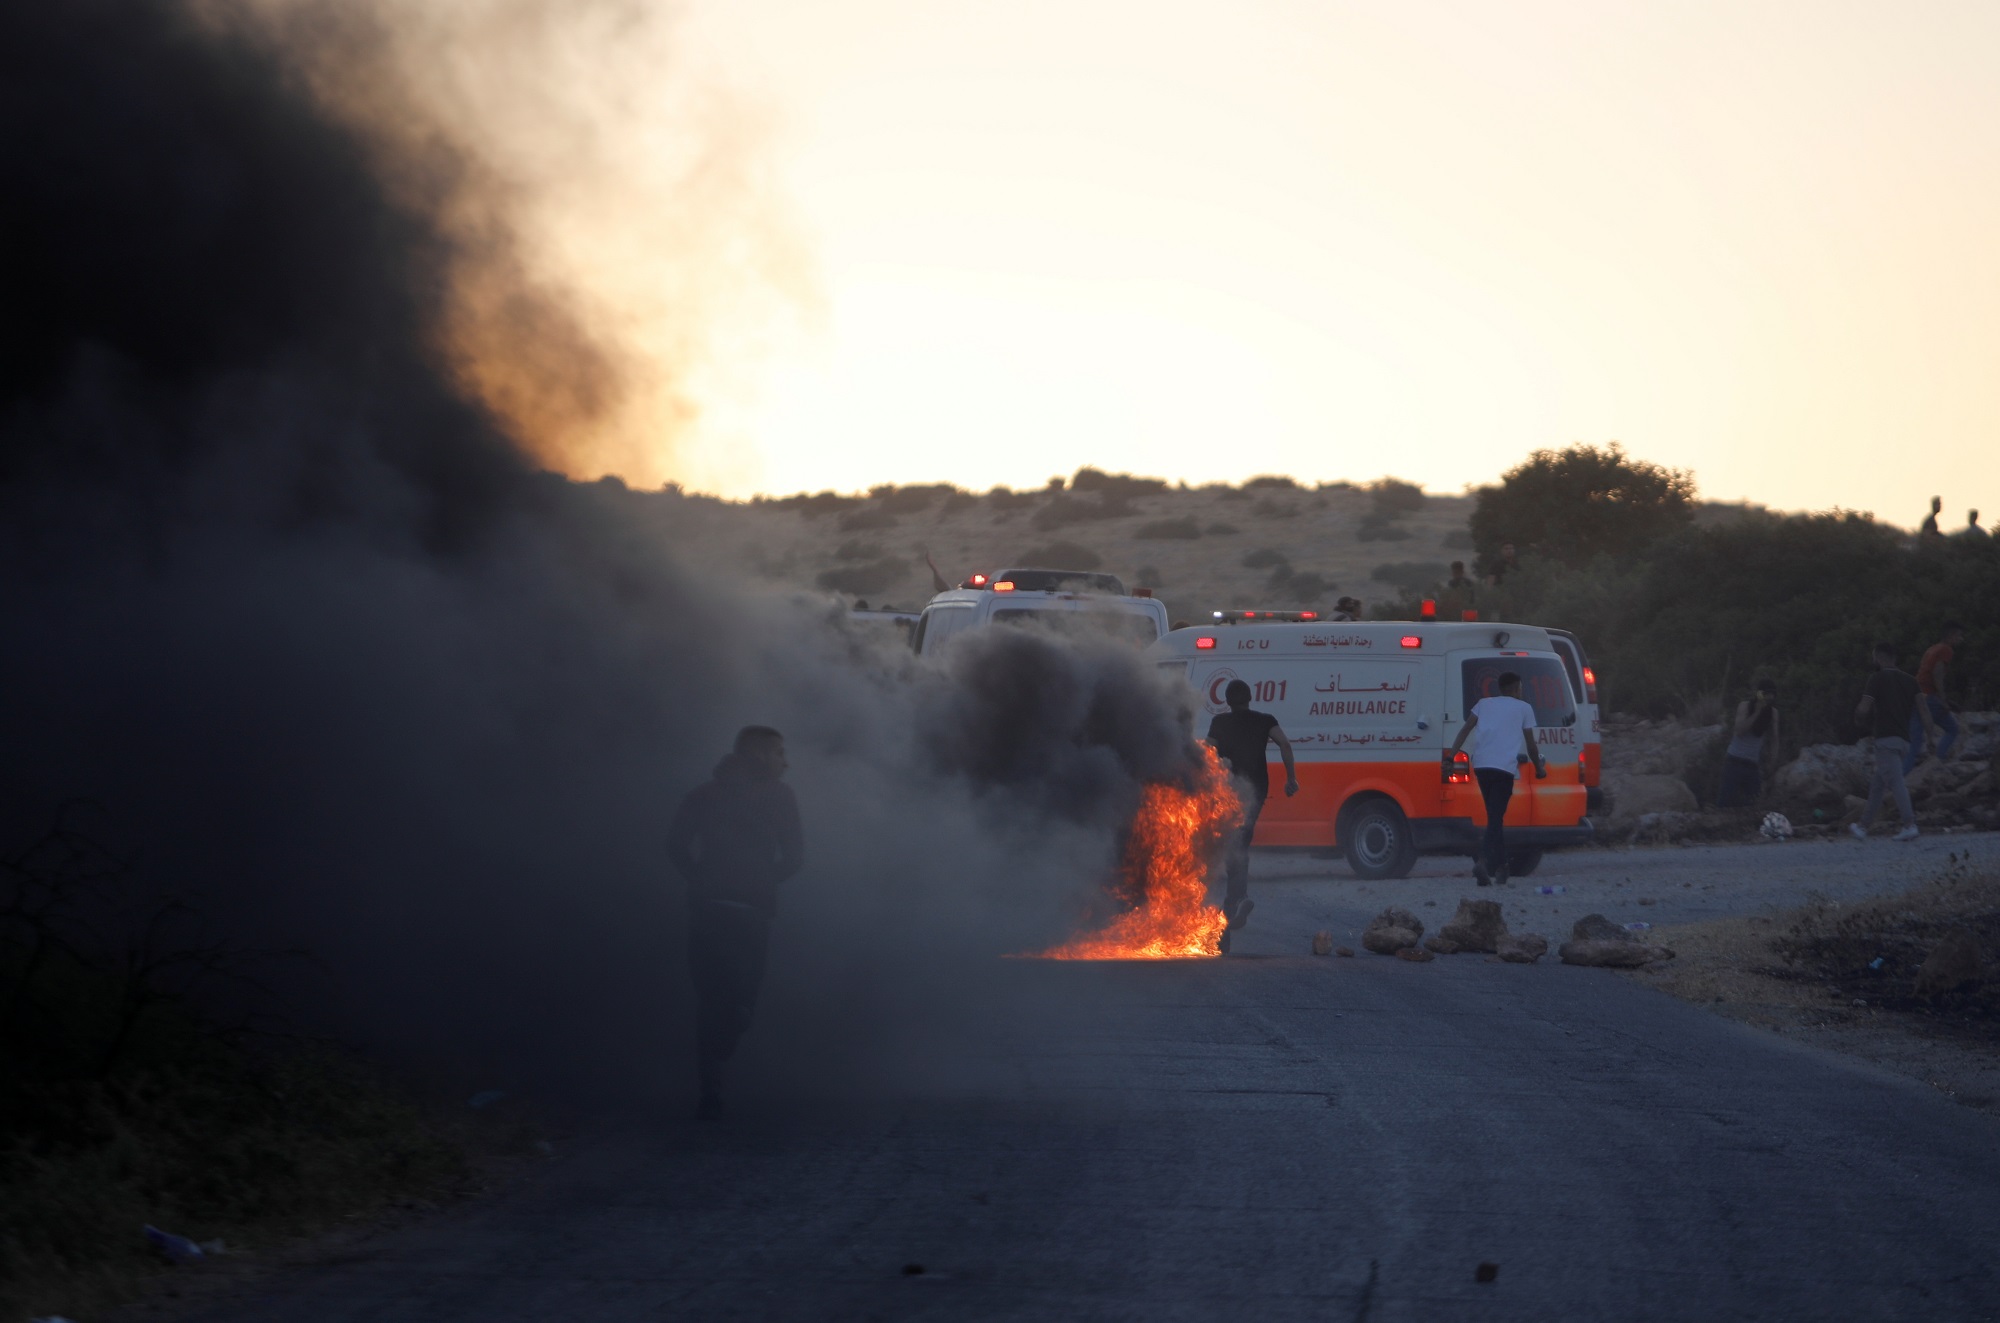 سيارة إسعاف في الضفة الغربية المحتلة لتقديم المساعدة لفلسطينيين خلال مواجهات مع قوات الاحتلال الإسرائيلي. (رويترز)